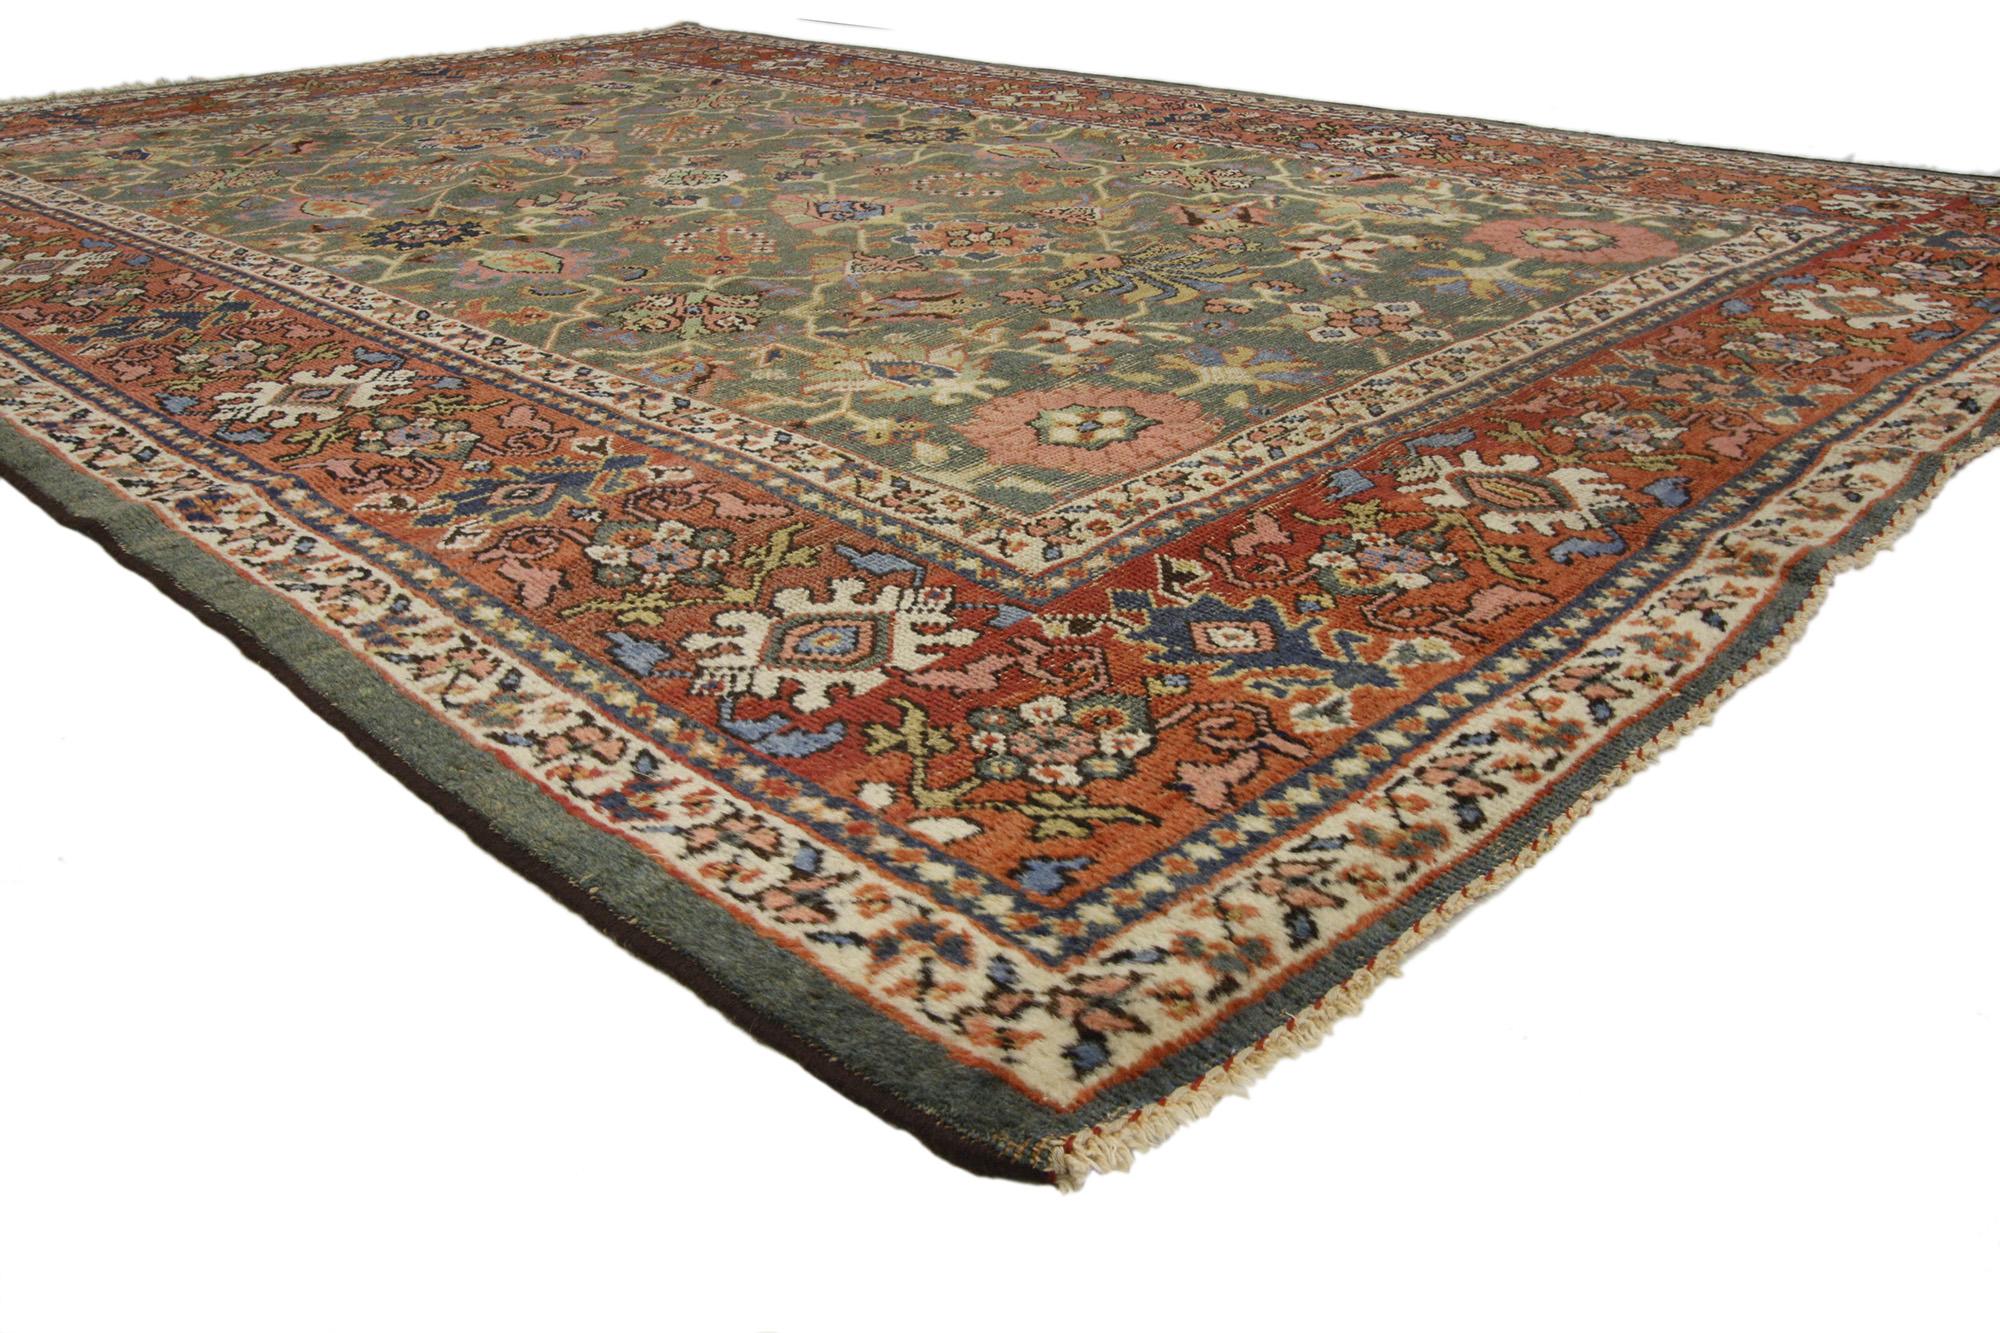 73173 antiker persischer Sultanabad-Teppich im rustikalen Arts-and-Crafts-Stil 06'10 x 10'10. Mit seinem zeitlosen Design und den erdigen Farben, kombiniert mit gemütlicher Schlichtheit, verkörpert dieser handgeknüpfte, antike persische